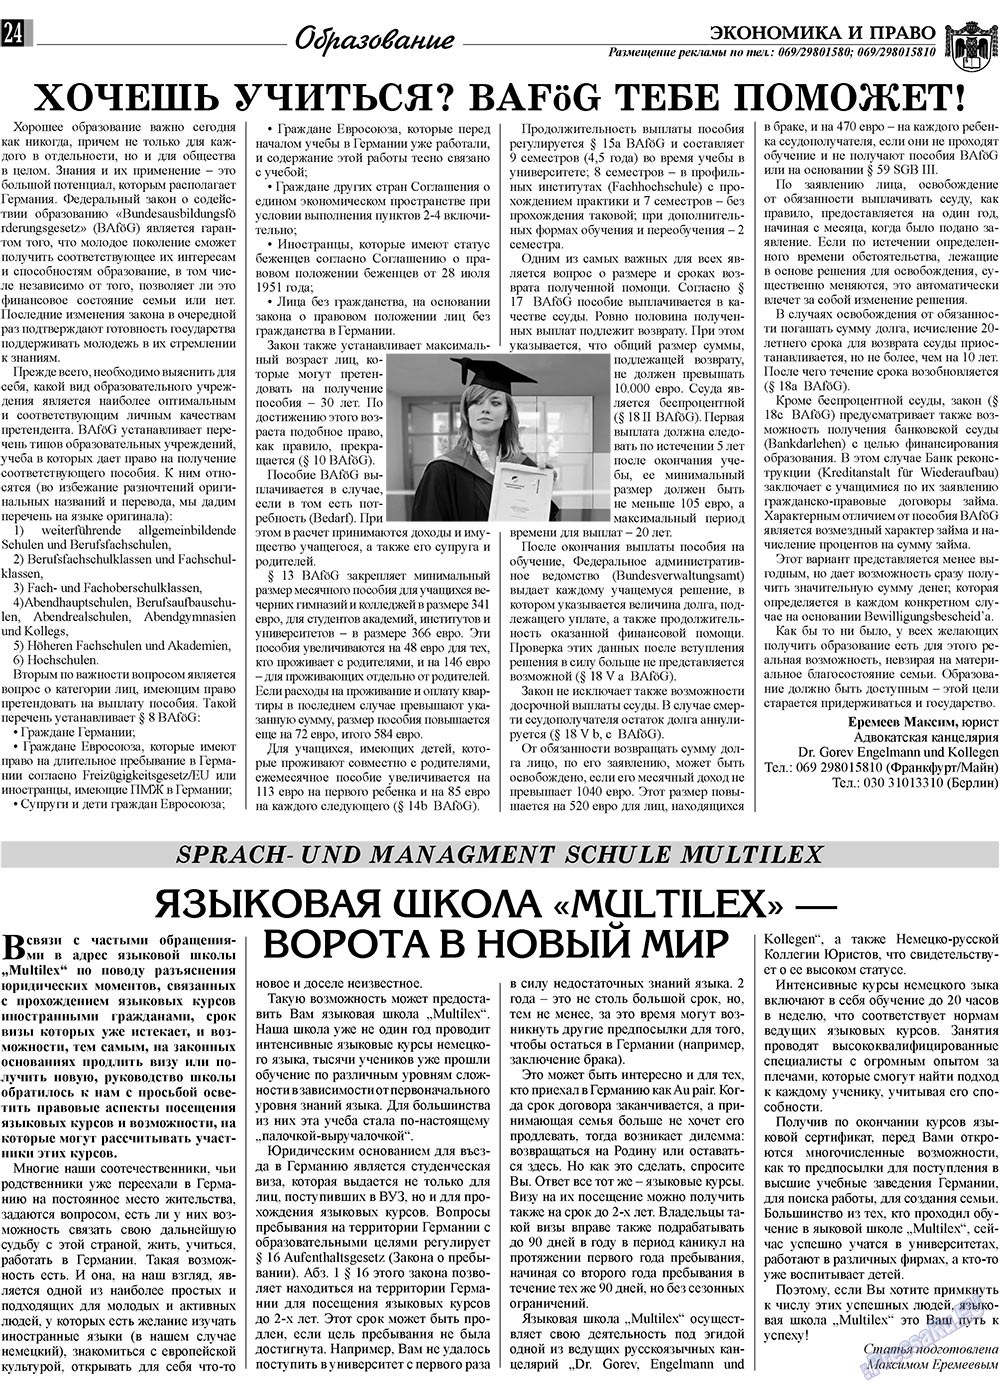 Экономика и право, газета. 2009 №11 стр.24